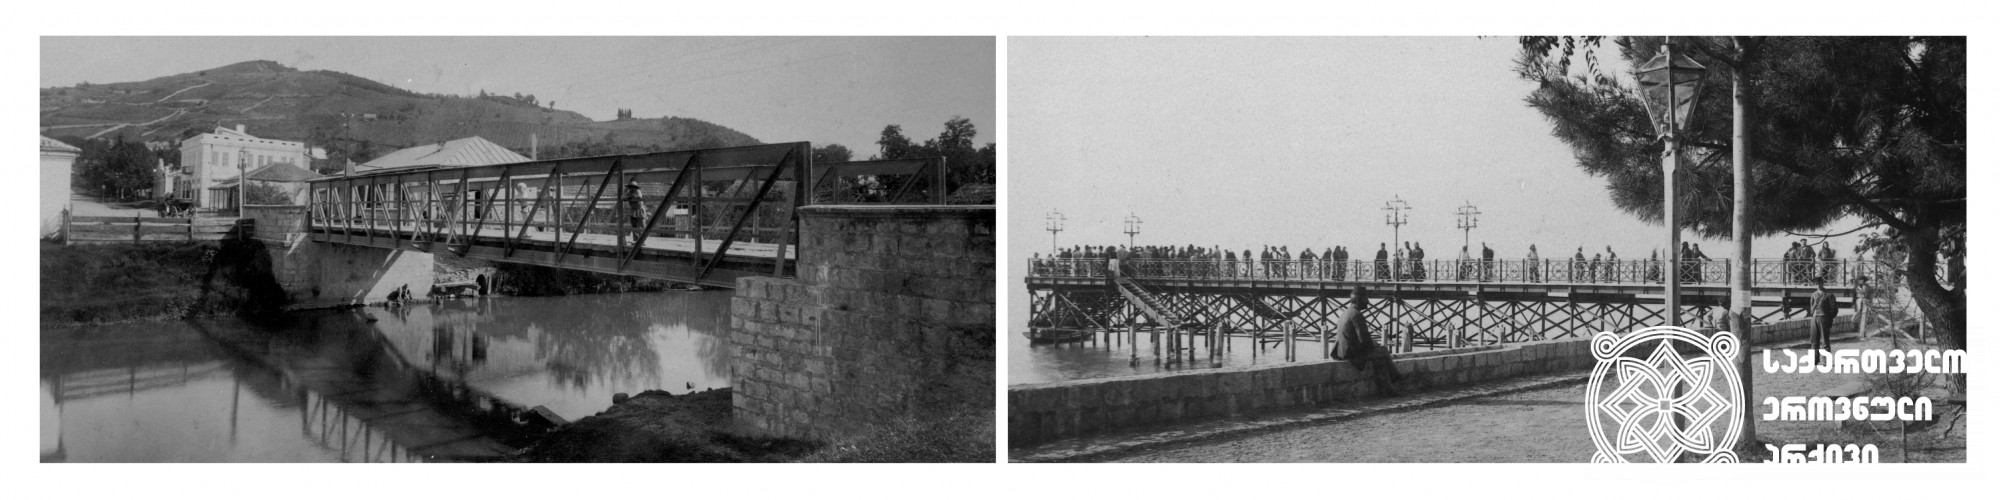 მარცხნივ: ხიდი მდინარე ბესლეთზე <br>
მარჯვნივ: სოხუმის ნავმისადგომი <br>
(1880-1900) <br>
დიმიტრი ერმაკოვის ფოტოკოლექცია <br>
On the left: Bridge over Besleti River <br>
on the right: Sokhumi port <br>
(1880-1900) <br>
Dimitri Ermakov's photo collection